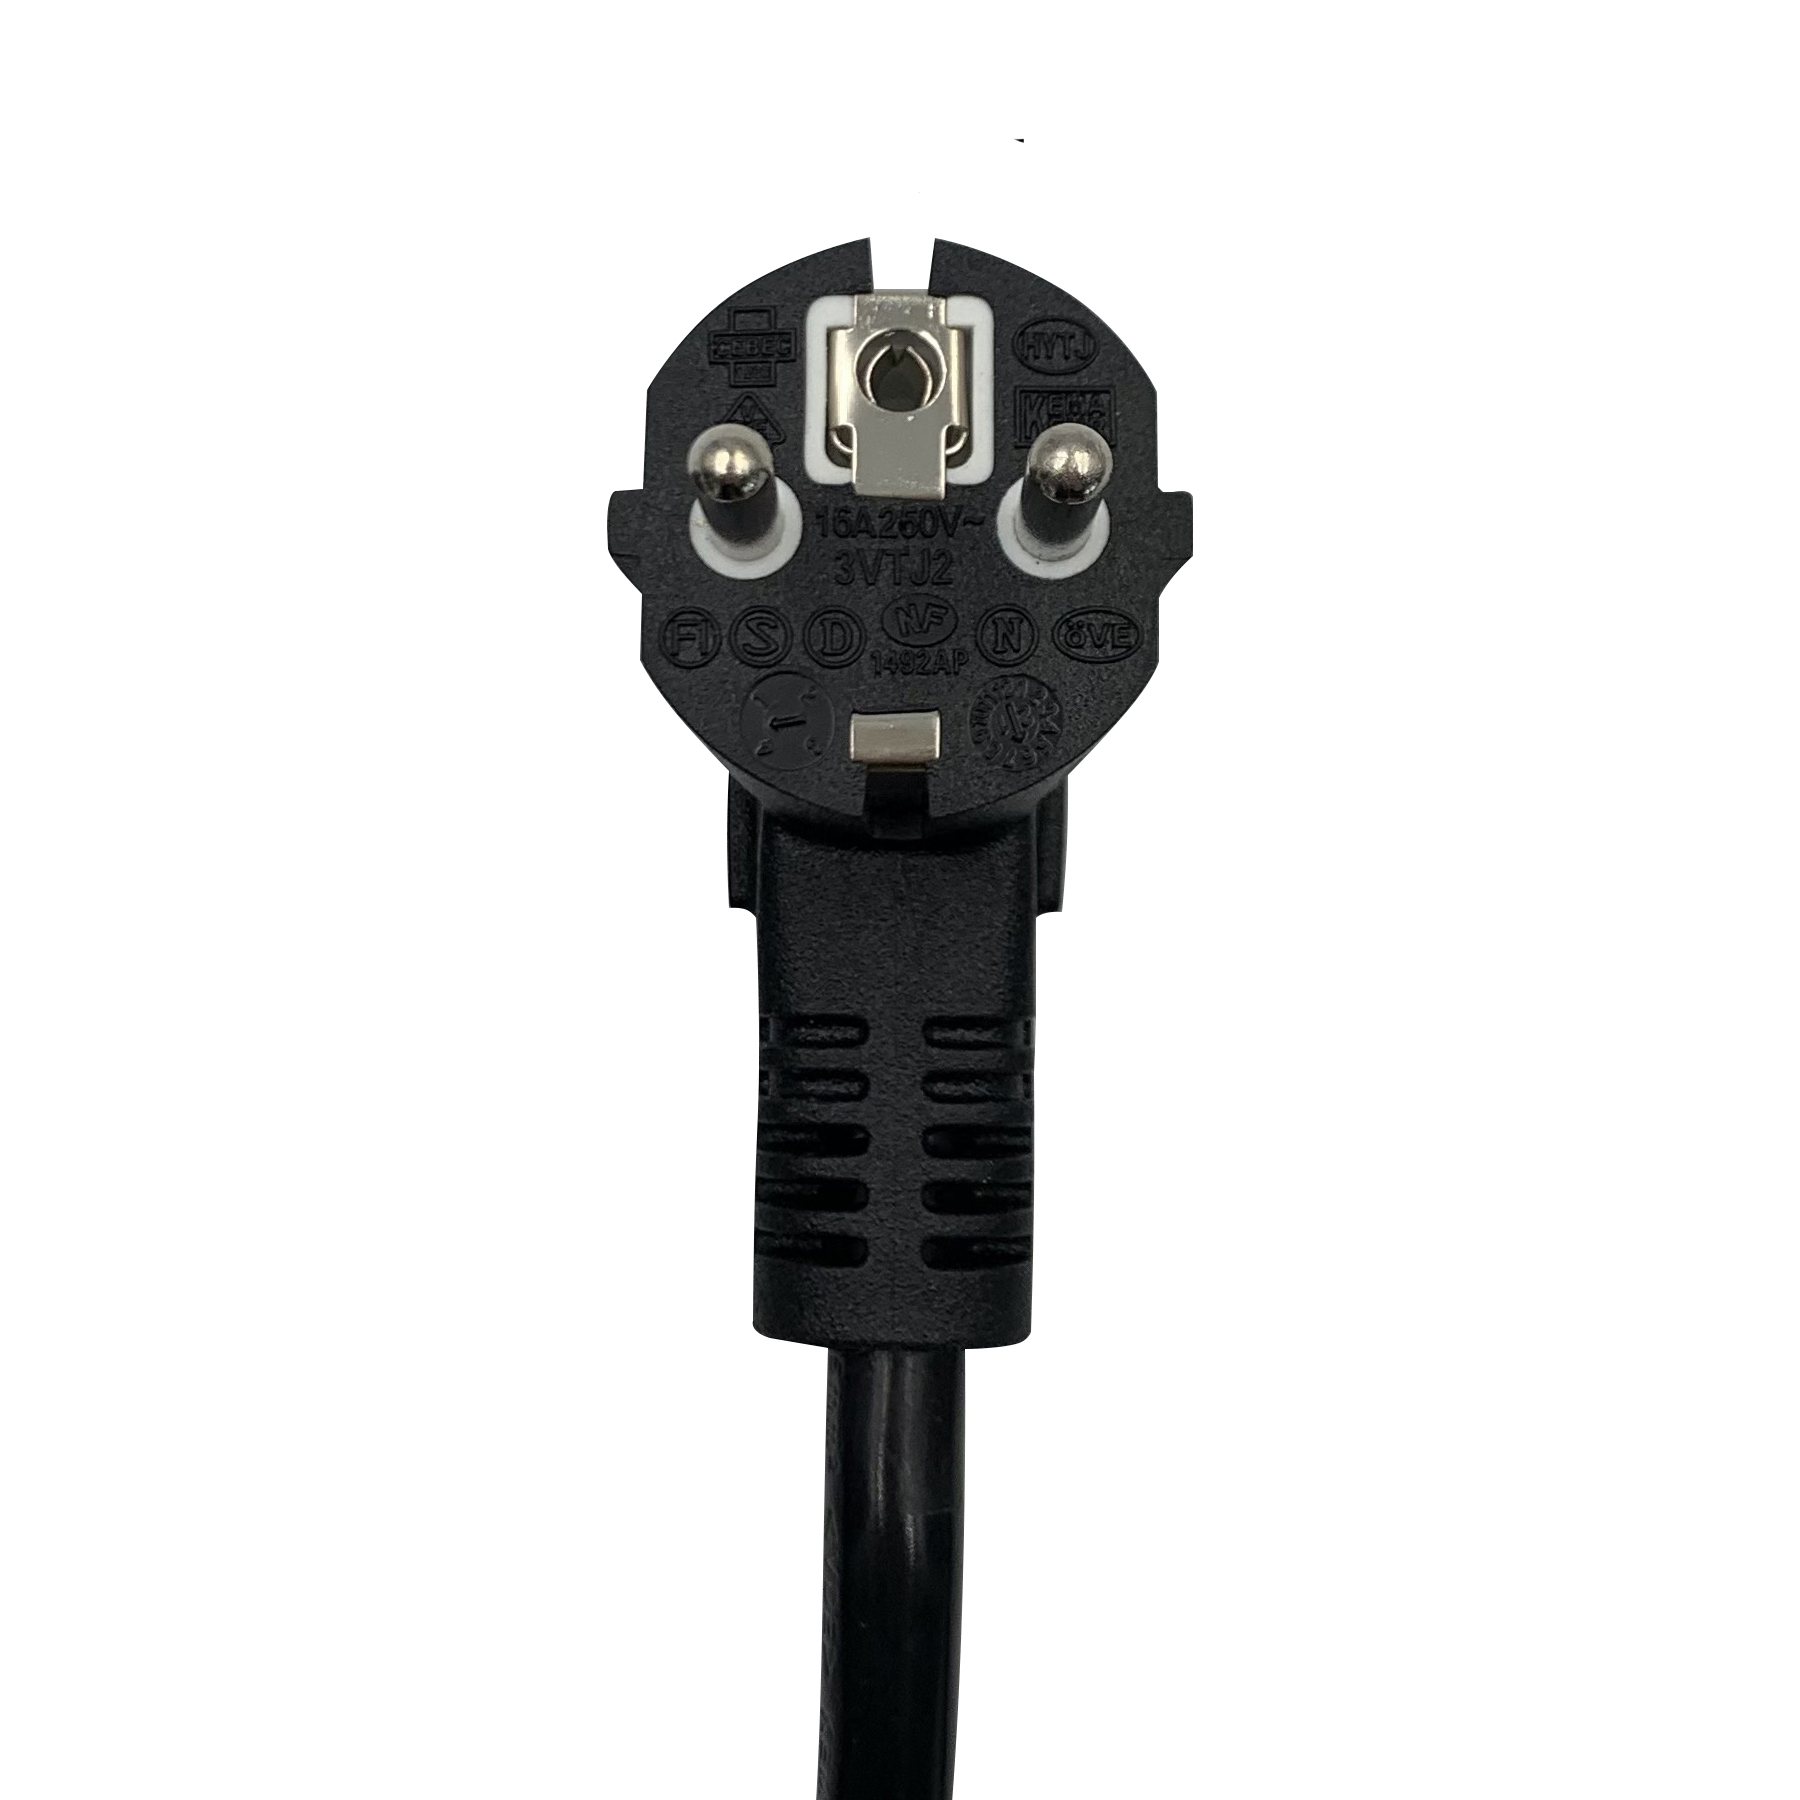 Zaidtek - Type 2 Ev Charging Connector